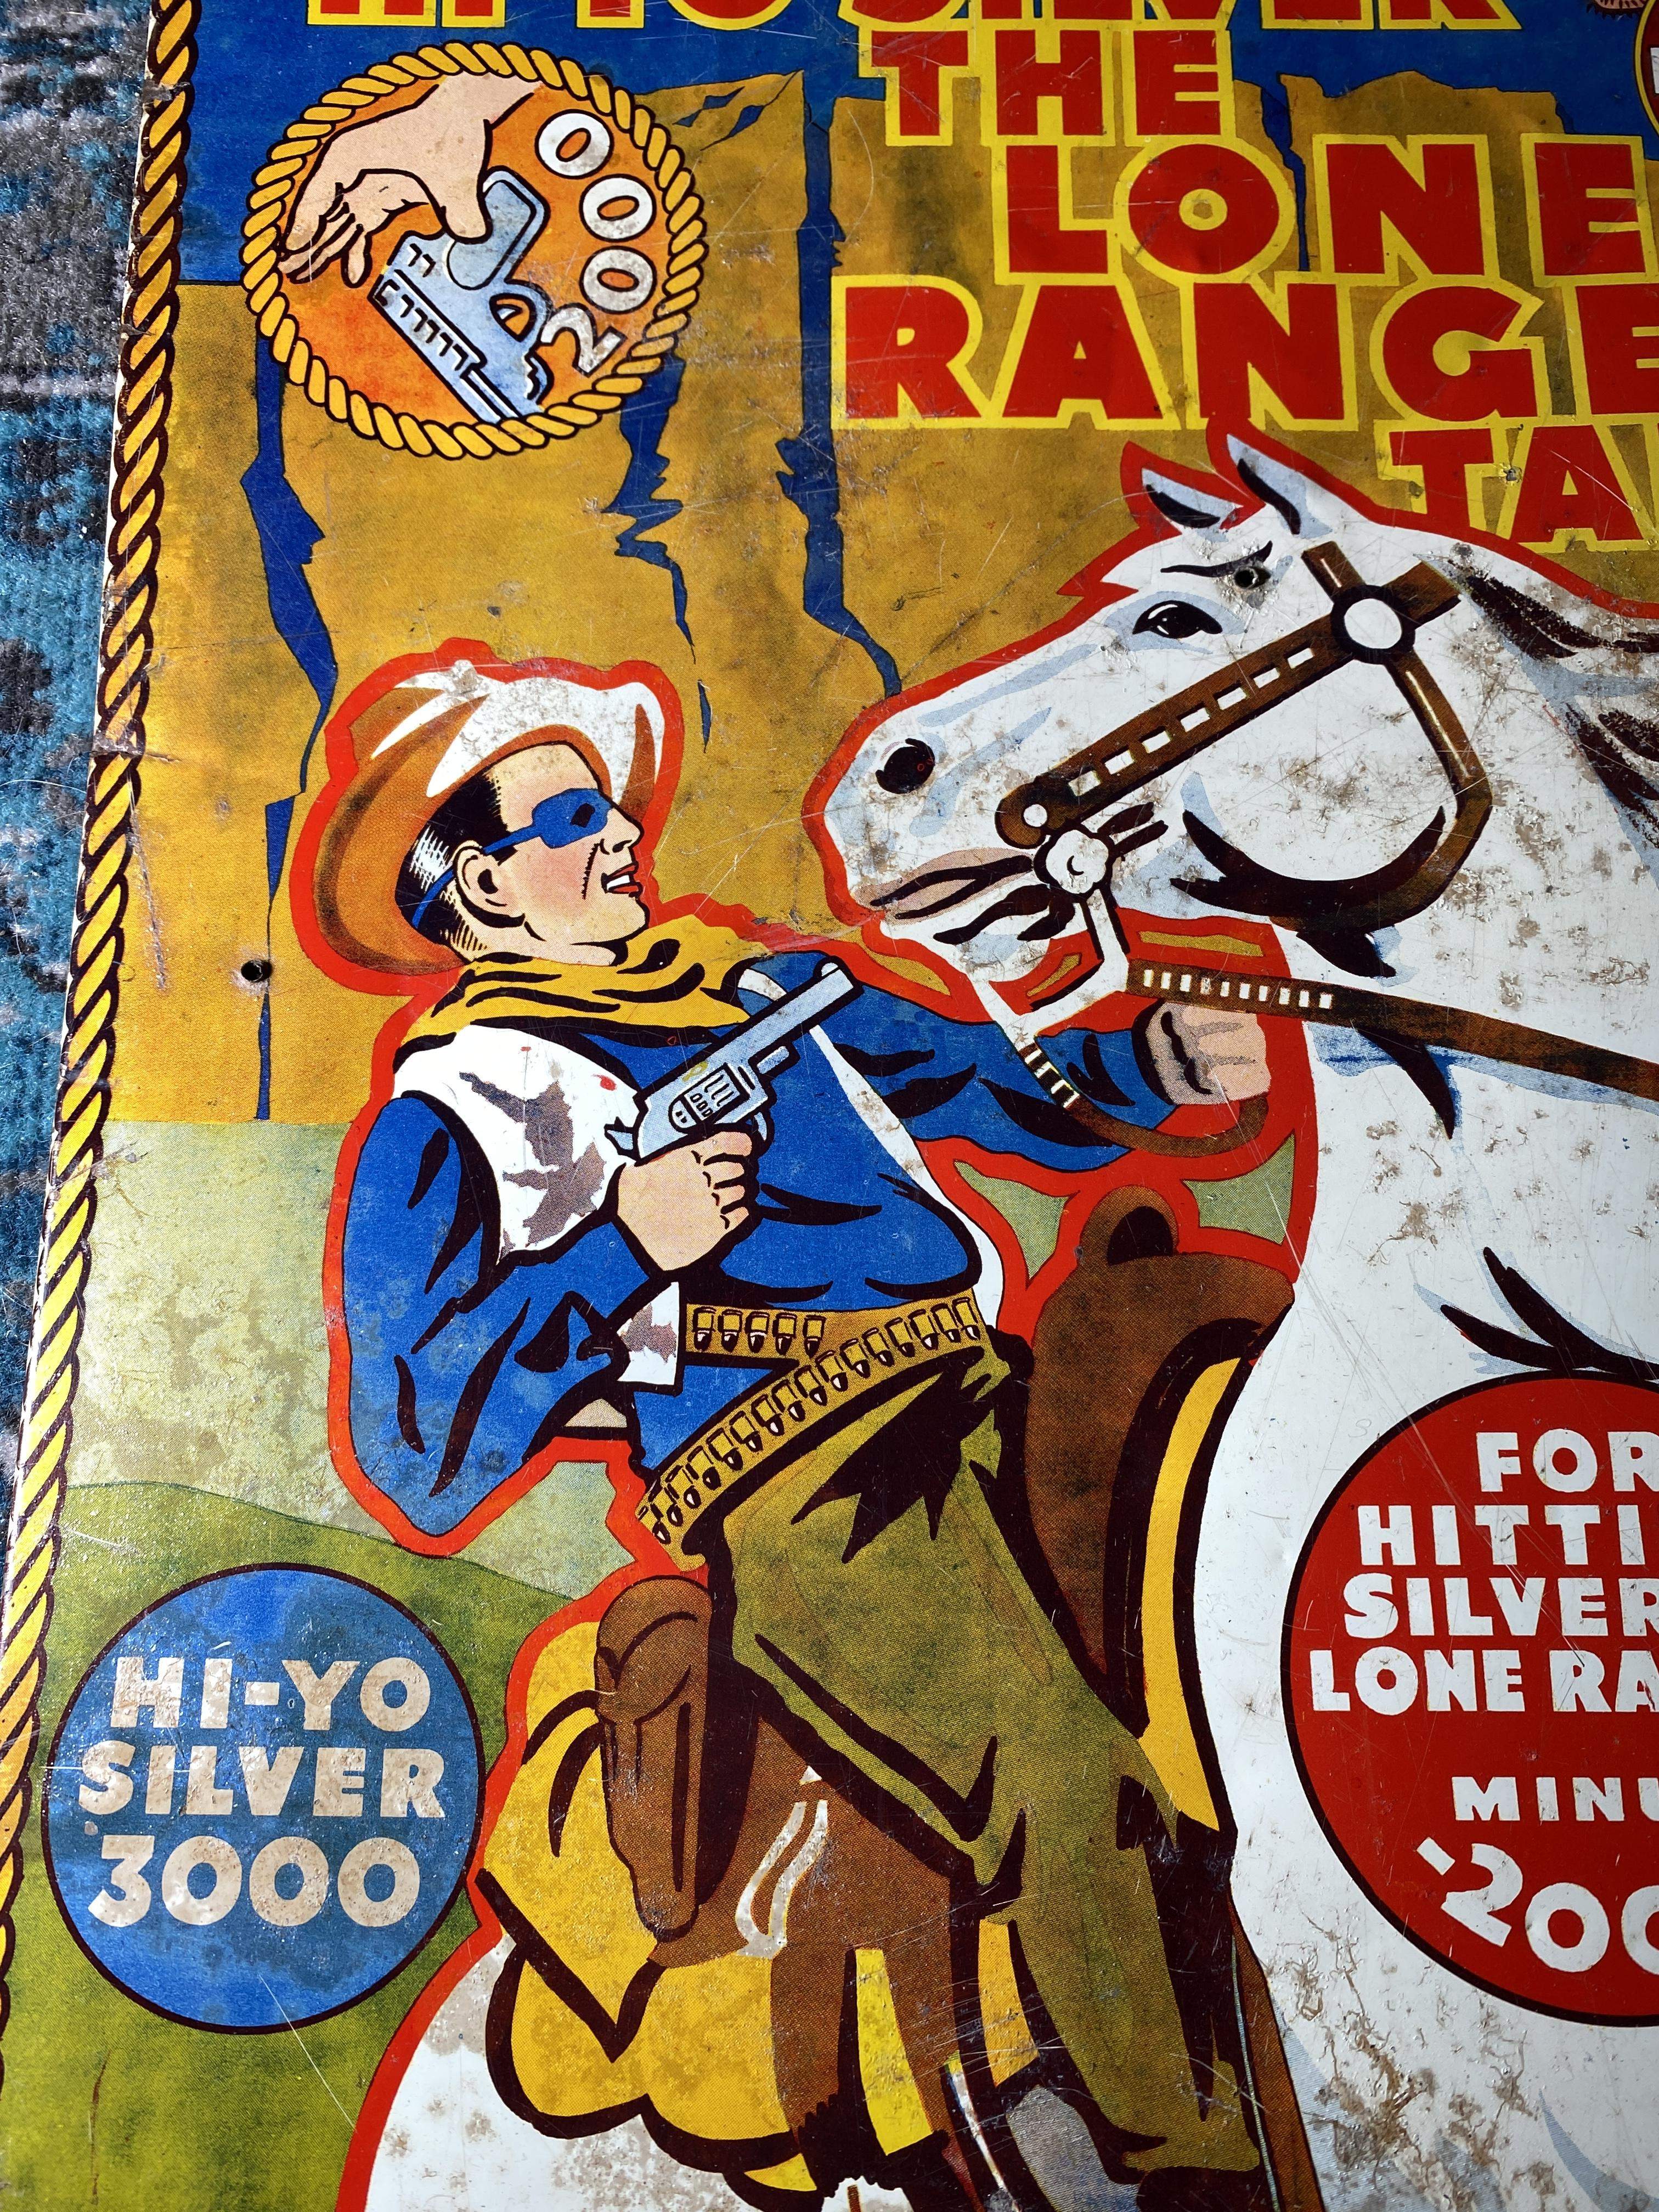 Blechschild The Lone Ranger USA von 1938